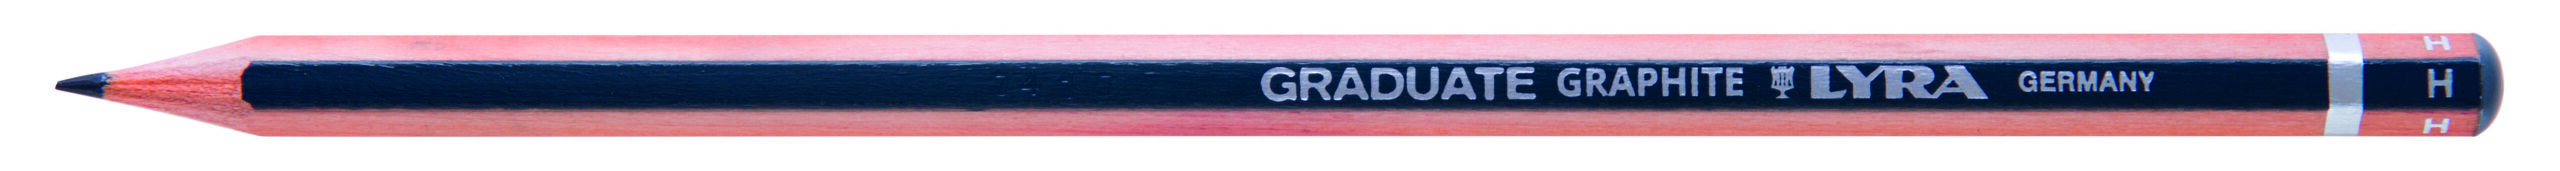 Pieštukas GRADUATE GRAPHITE 2H  L170112 FILA/LYRA, R05-807